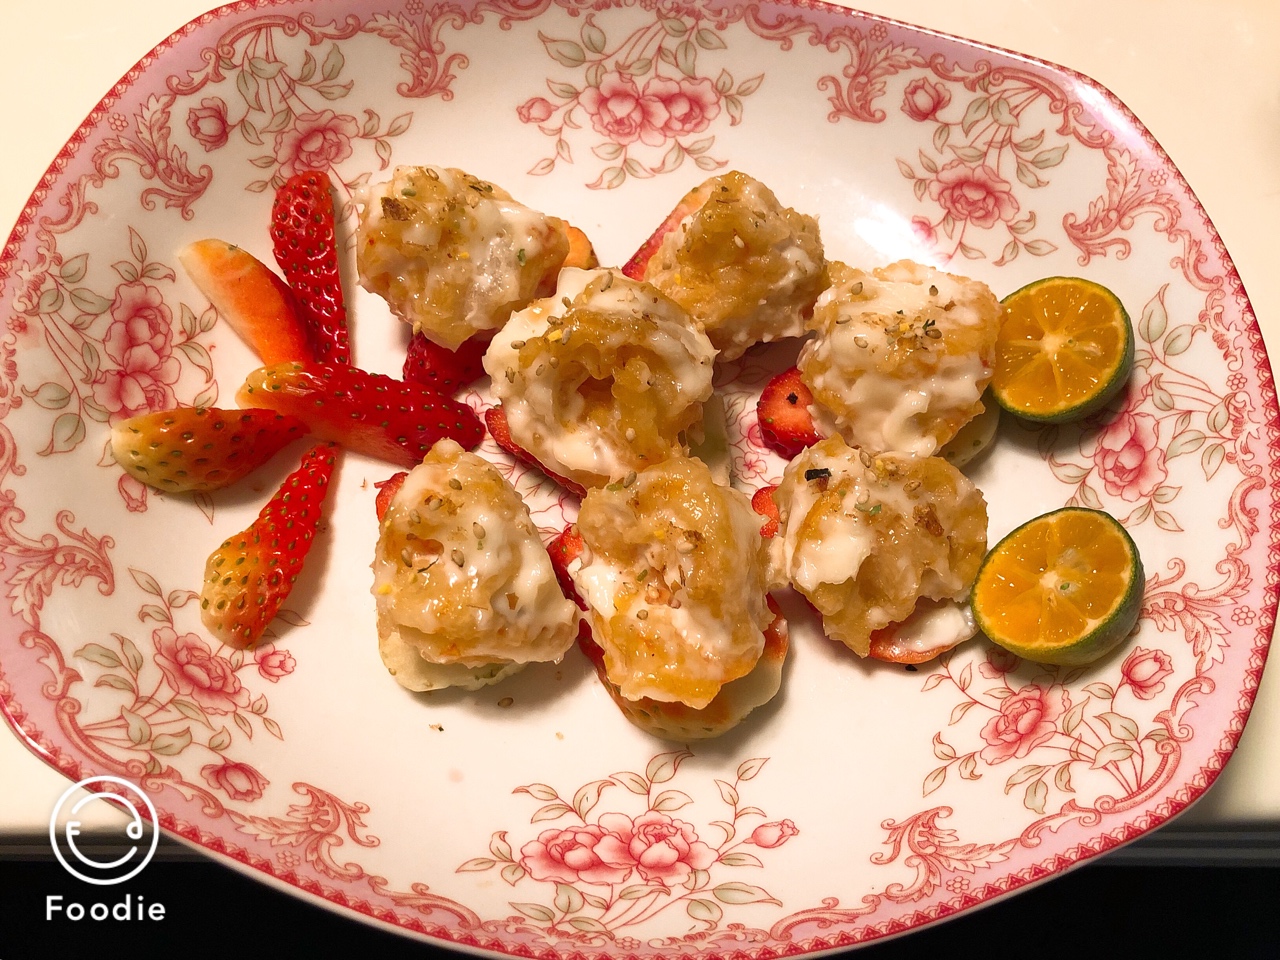 欢喜做年菜：鲜橙腰果沙拉酥虾